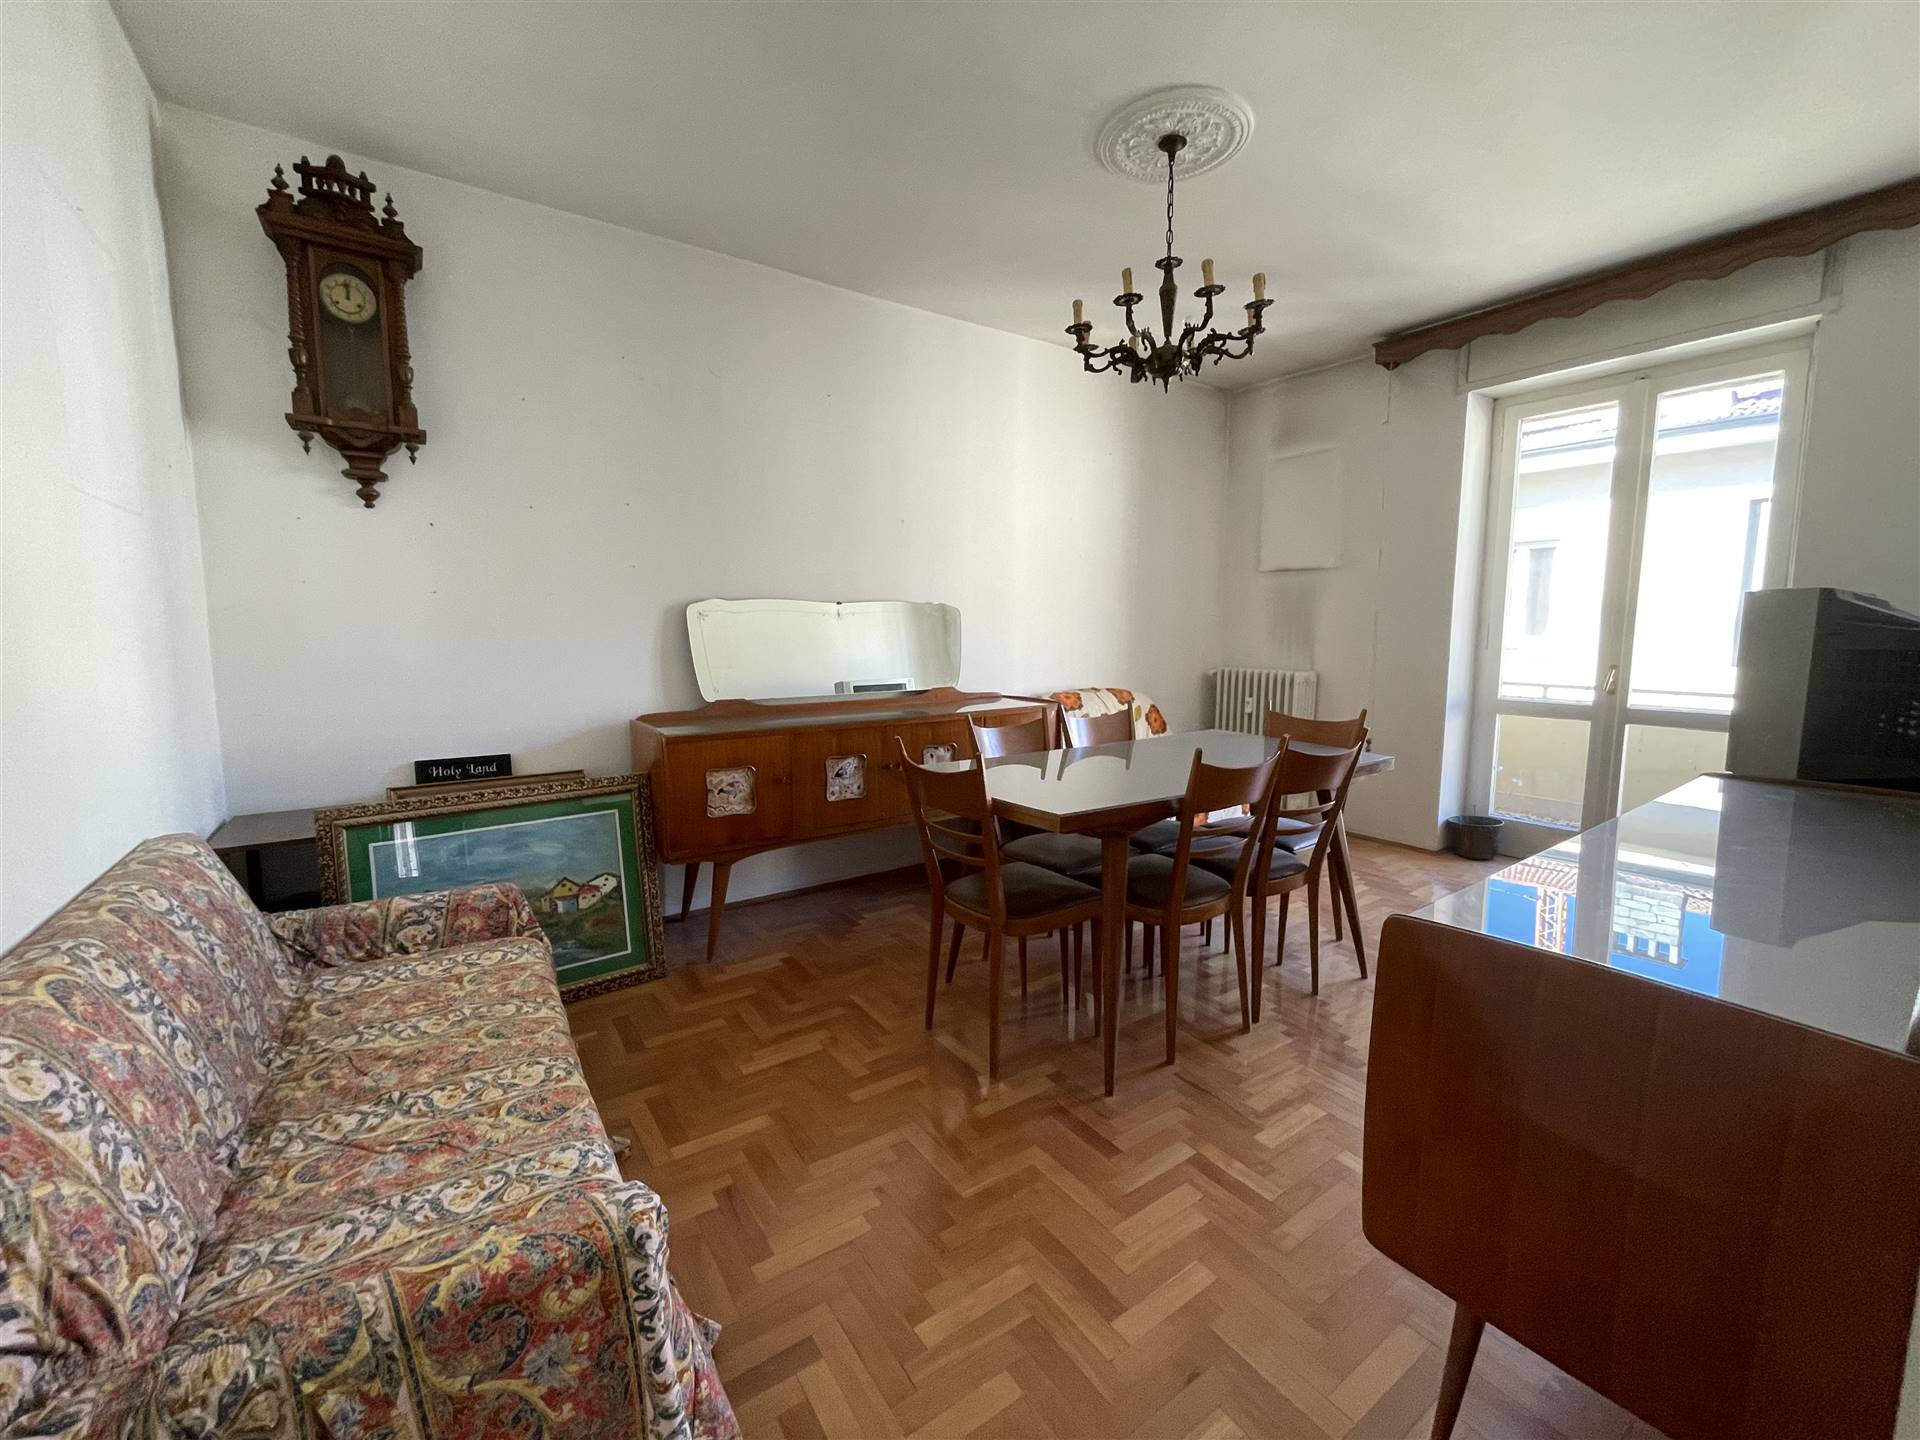 Appartamento in vendita a Sondrio, 4 locali, zona Località: SEMICENTRALE, prezzo € 85.000 | PortaleAgenzieImmobiliari.it